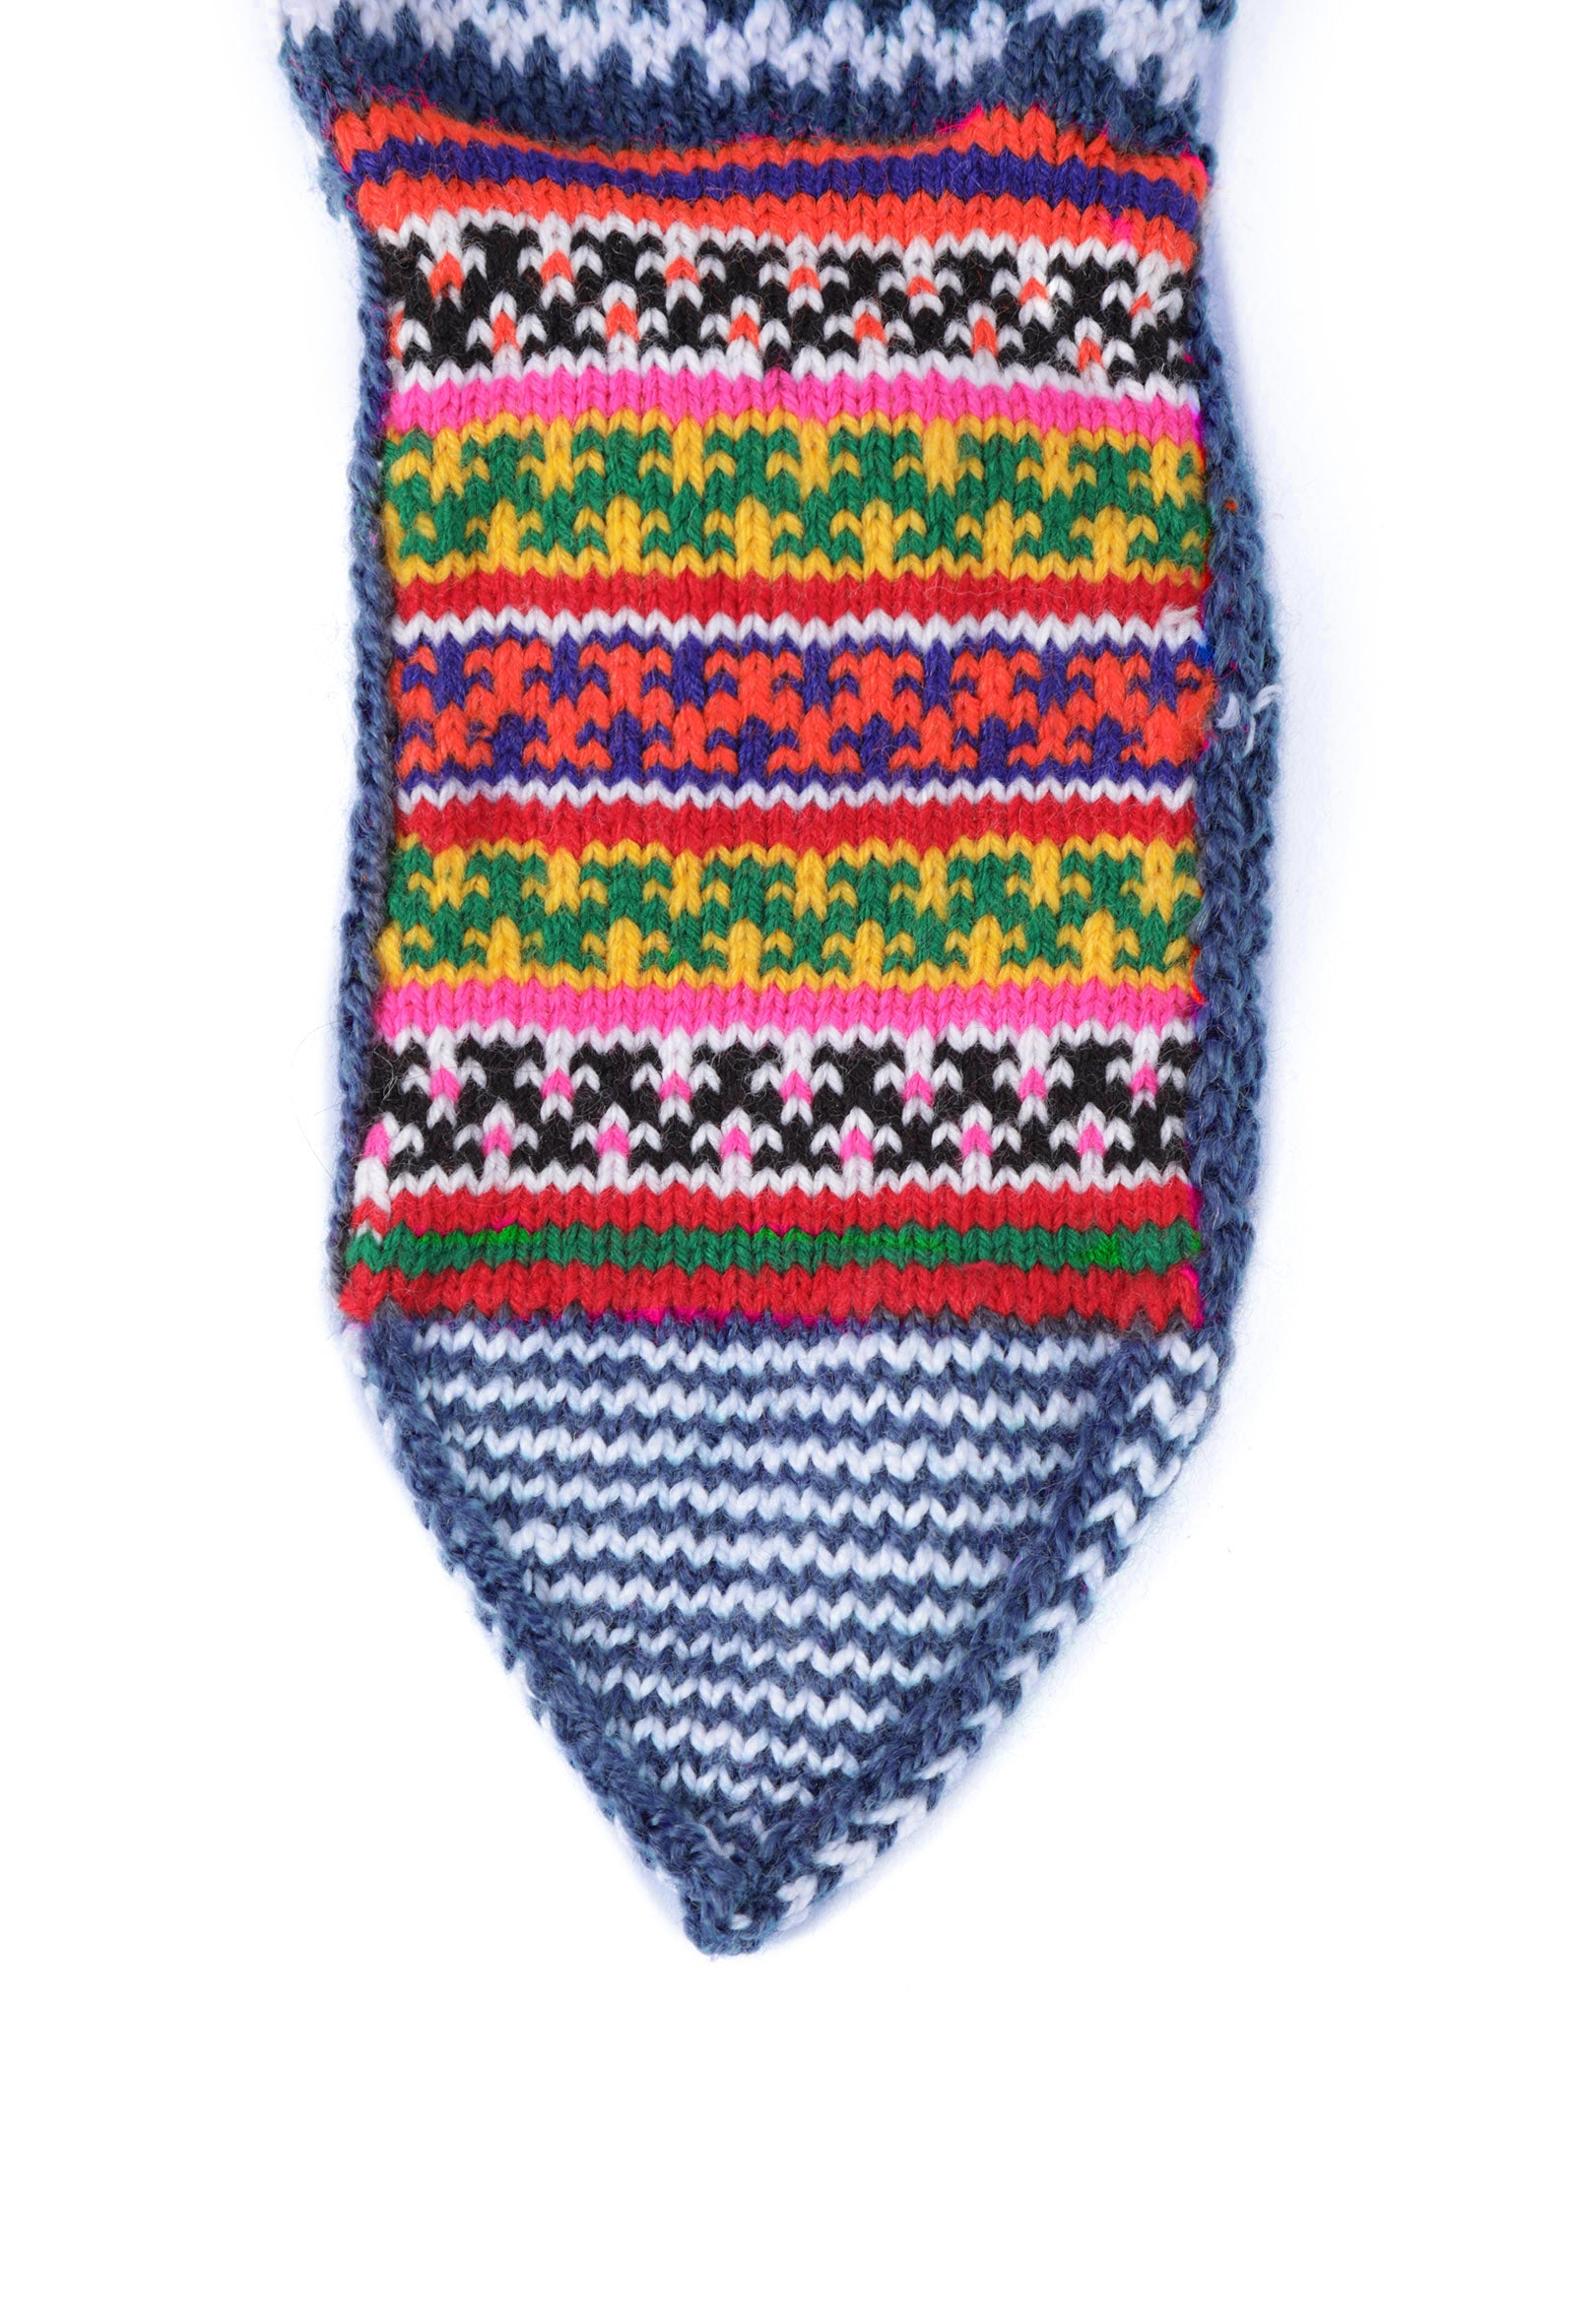 Aegean Blue & Multi Hand Knitted Woolen Winter Socks